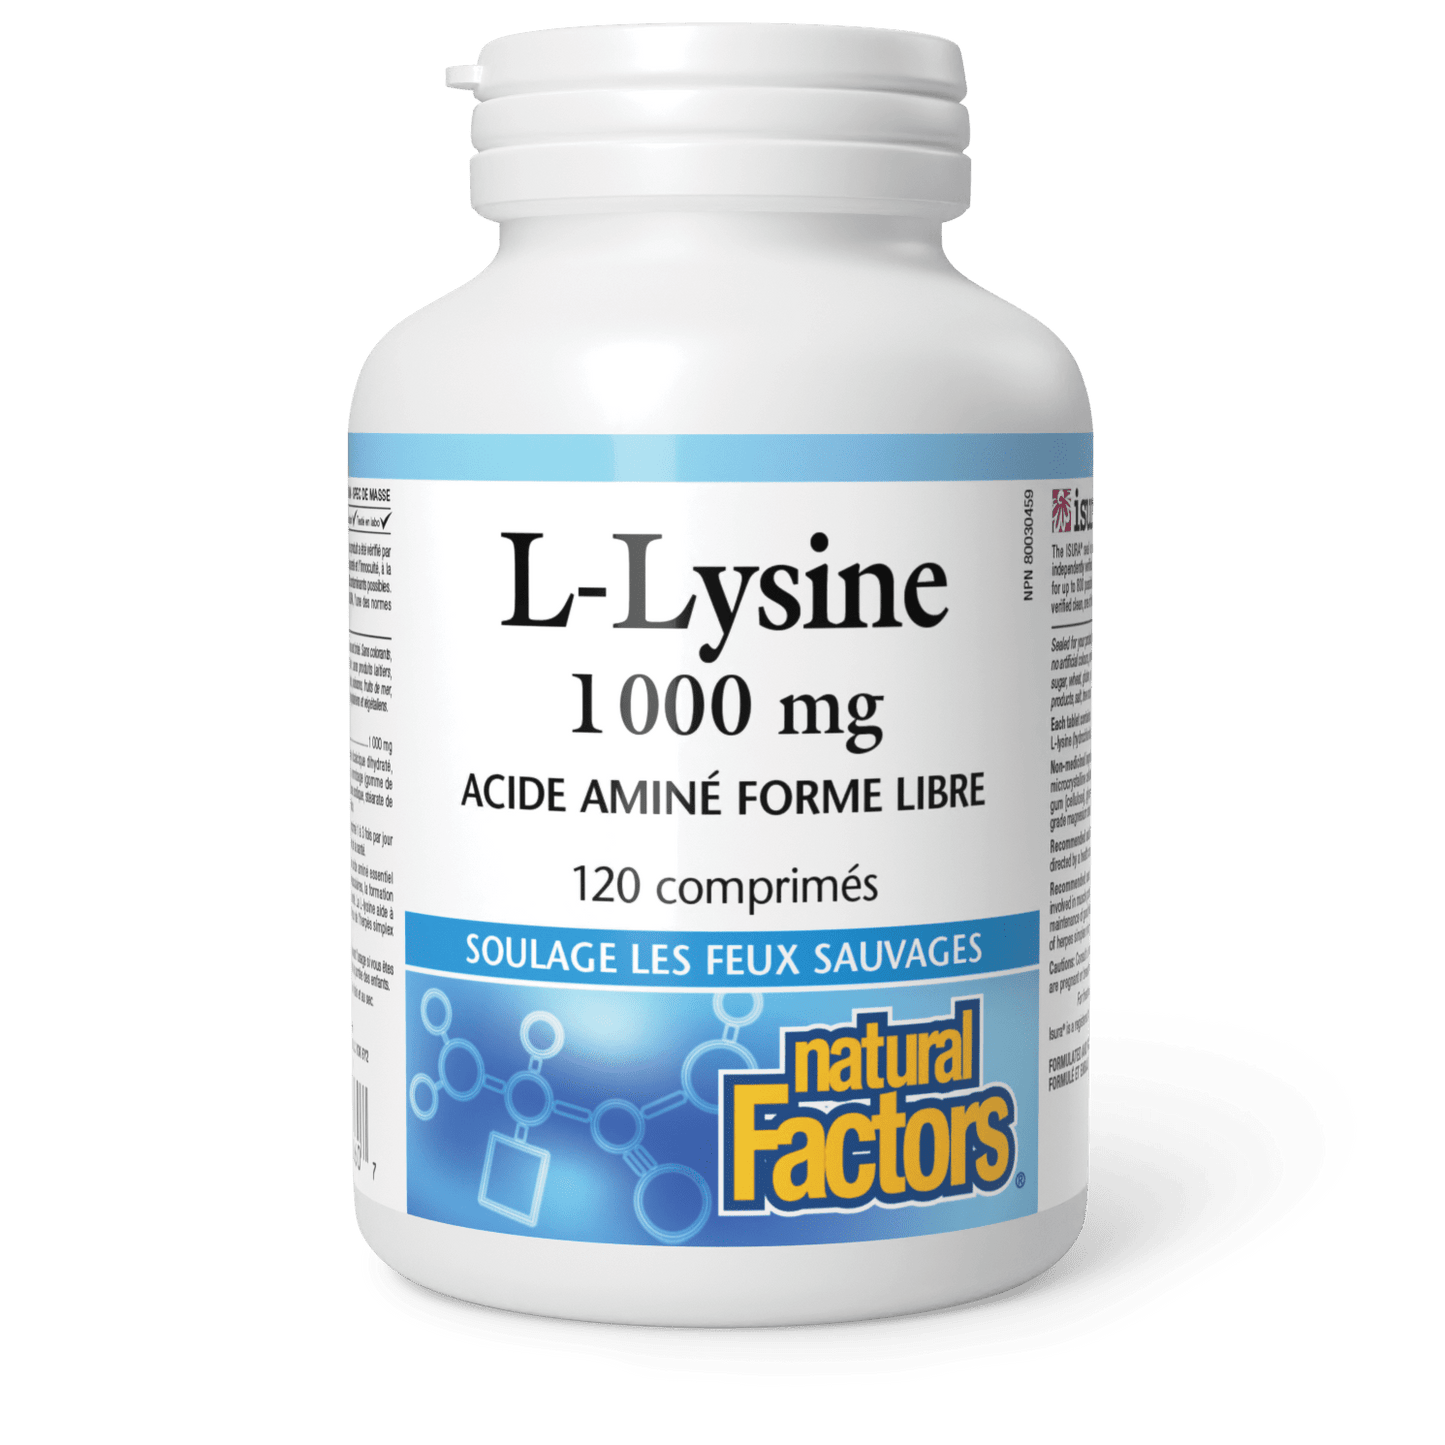 Lysine 1 000 mg, Natural Factors|v|image|2860